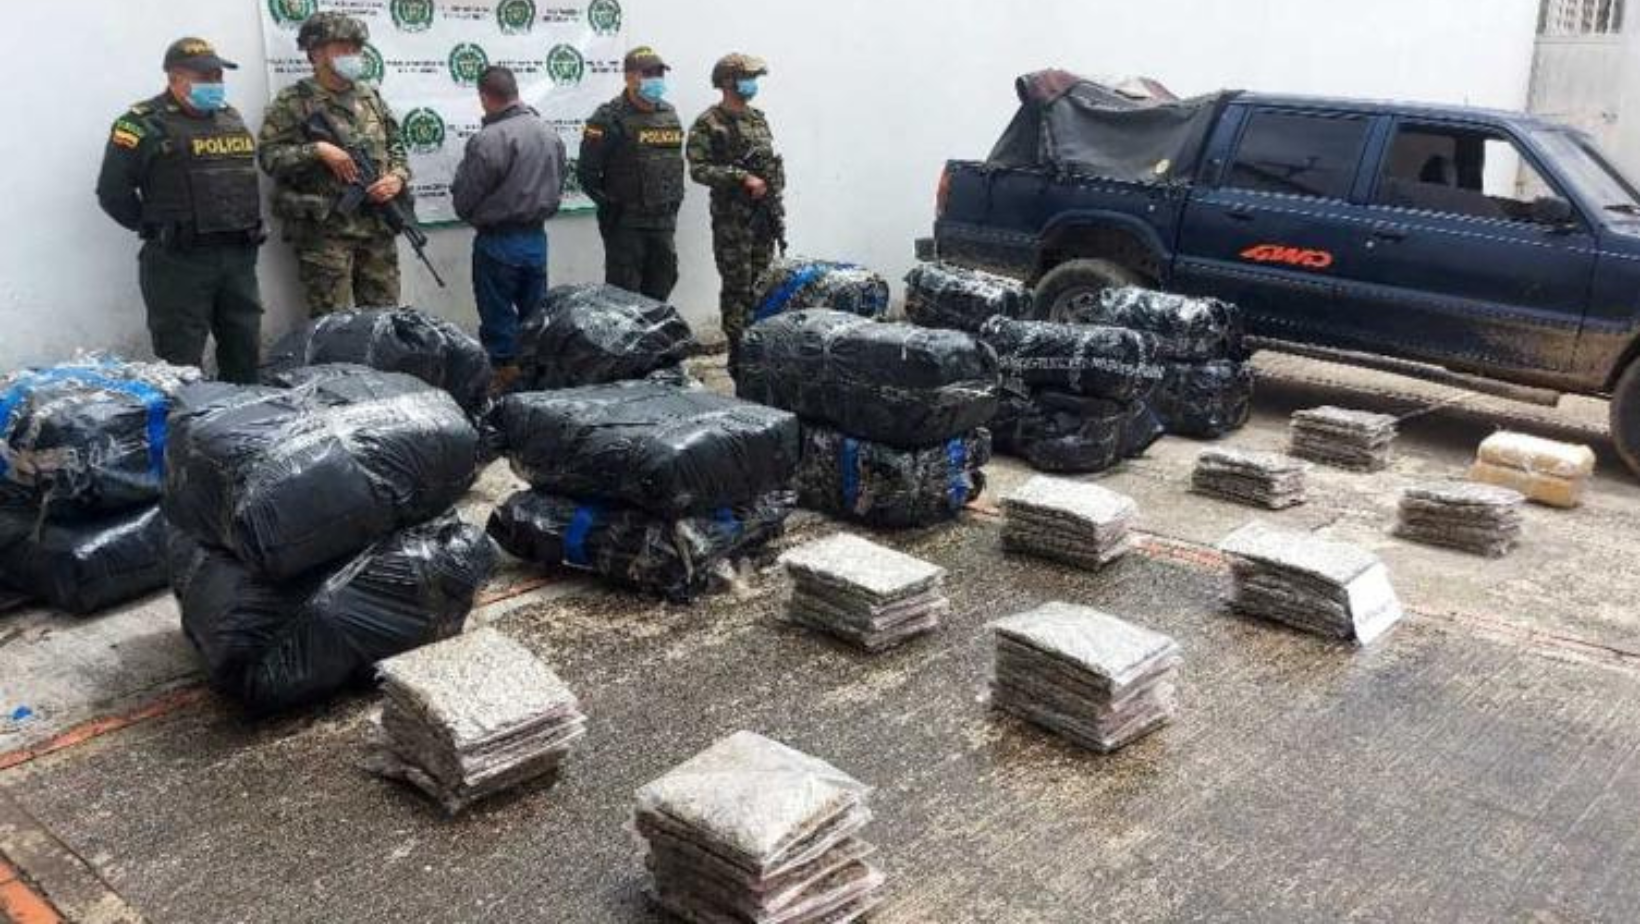 Ejército incauta más de 470 kilos de marihuana en Rioblanco